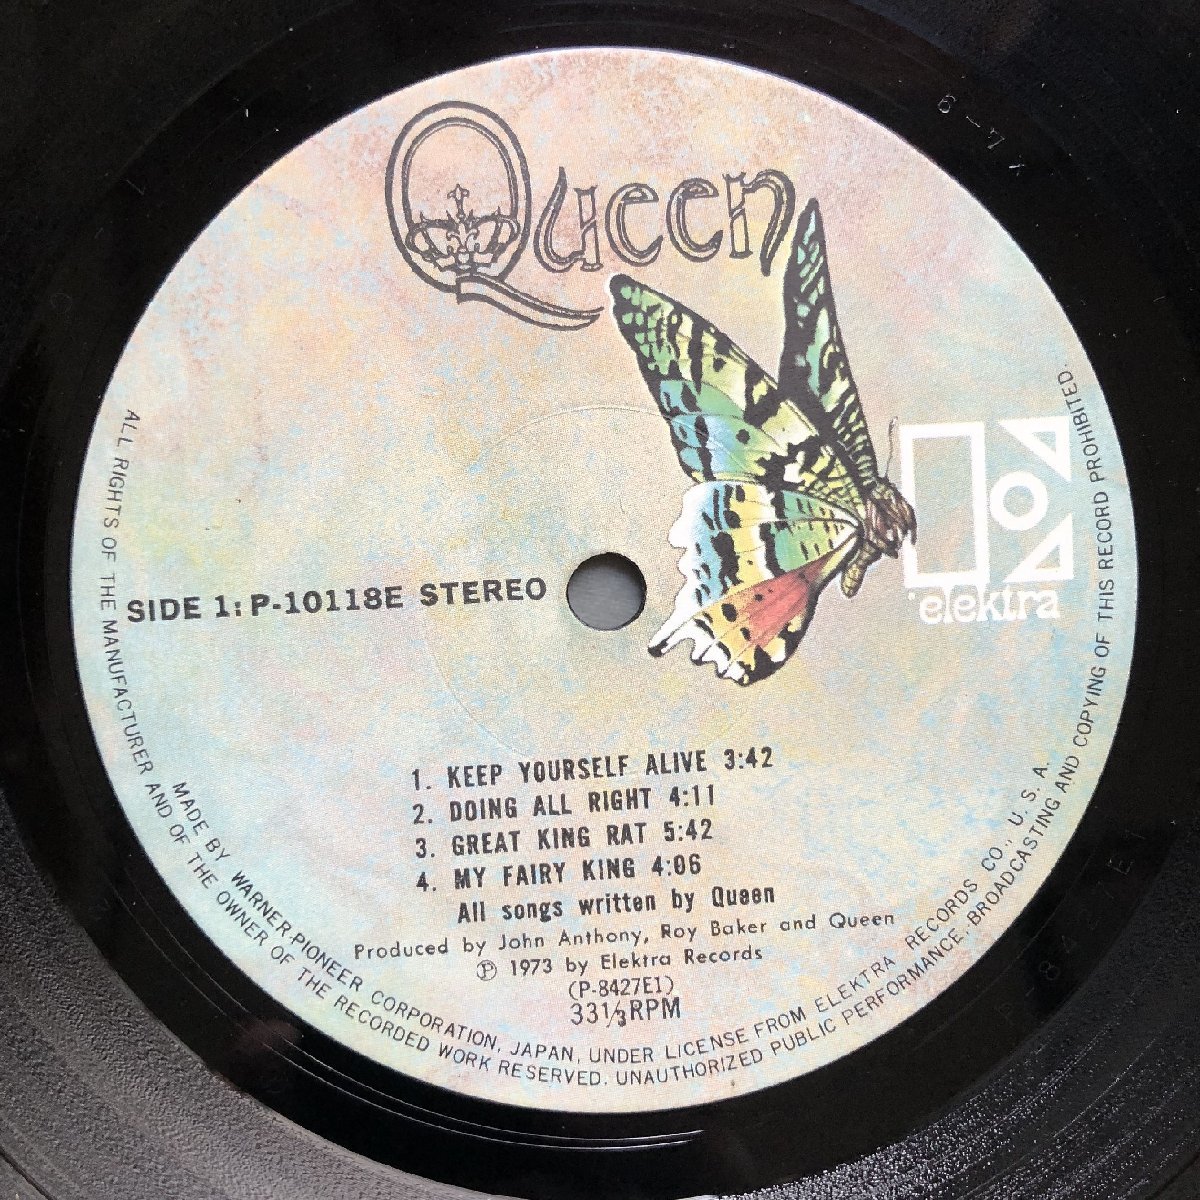 良盤 1976年 国内初盤 クイーン Queen LPレコード 戦慄の王女 Queen 名盤 帯付 Freddie Mercury, Brian May デビューアルバム_画像7